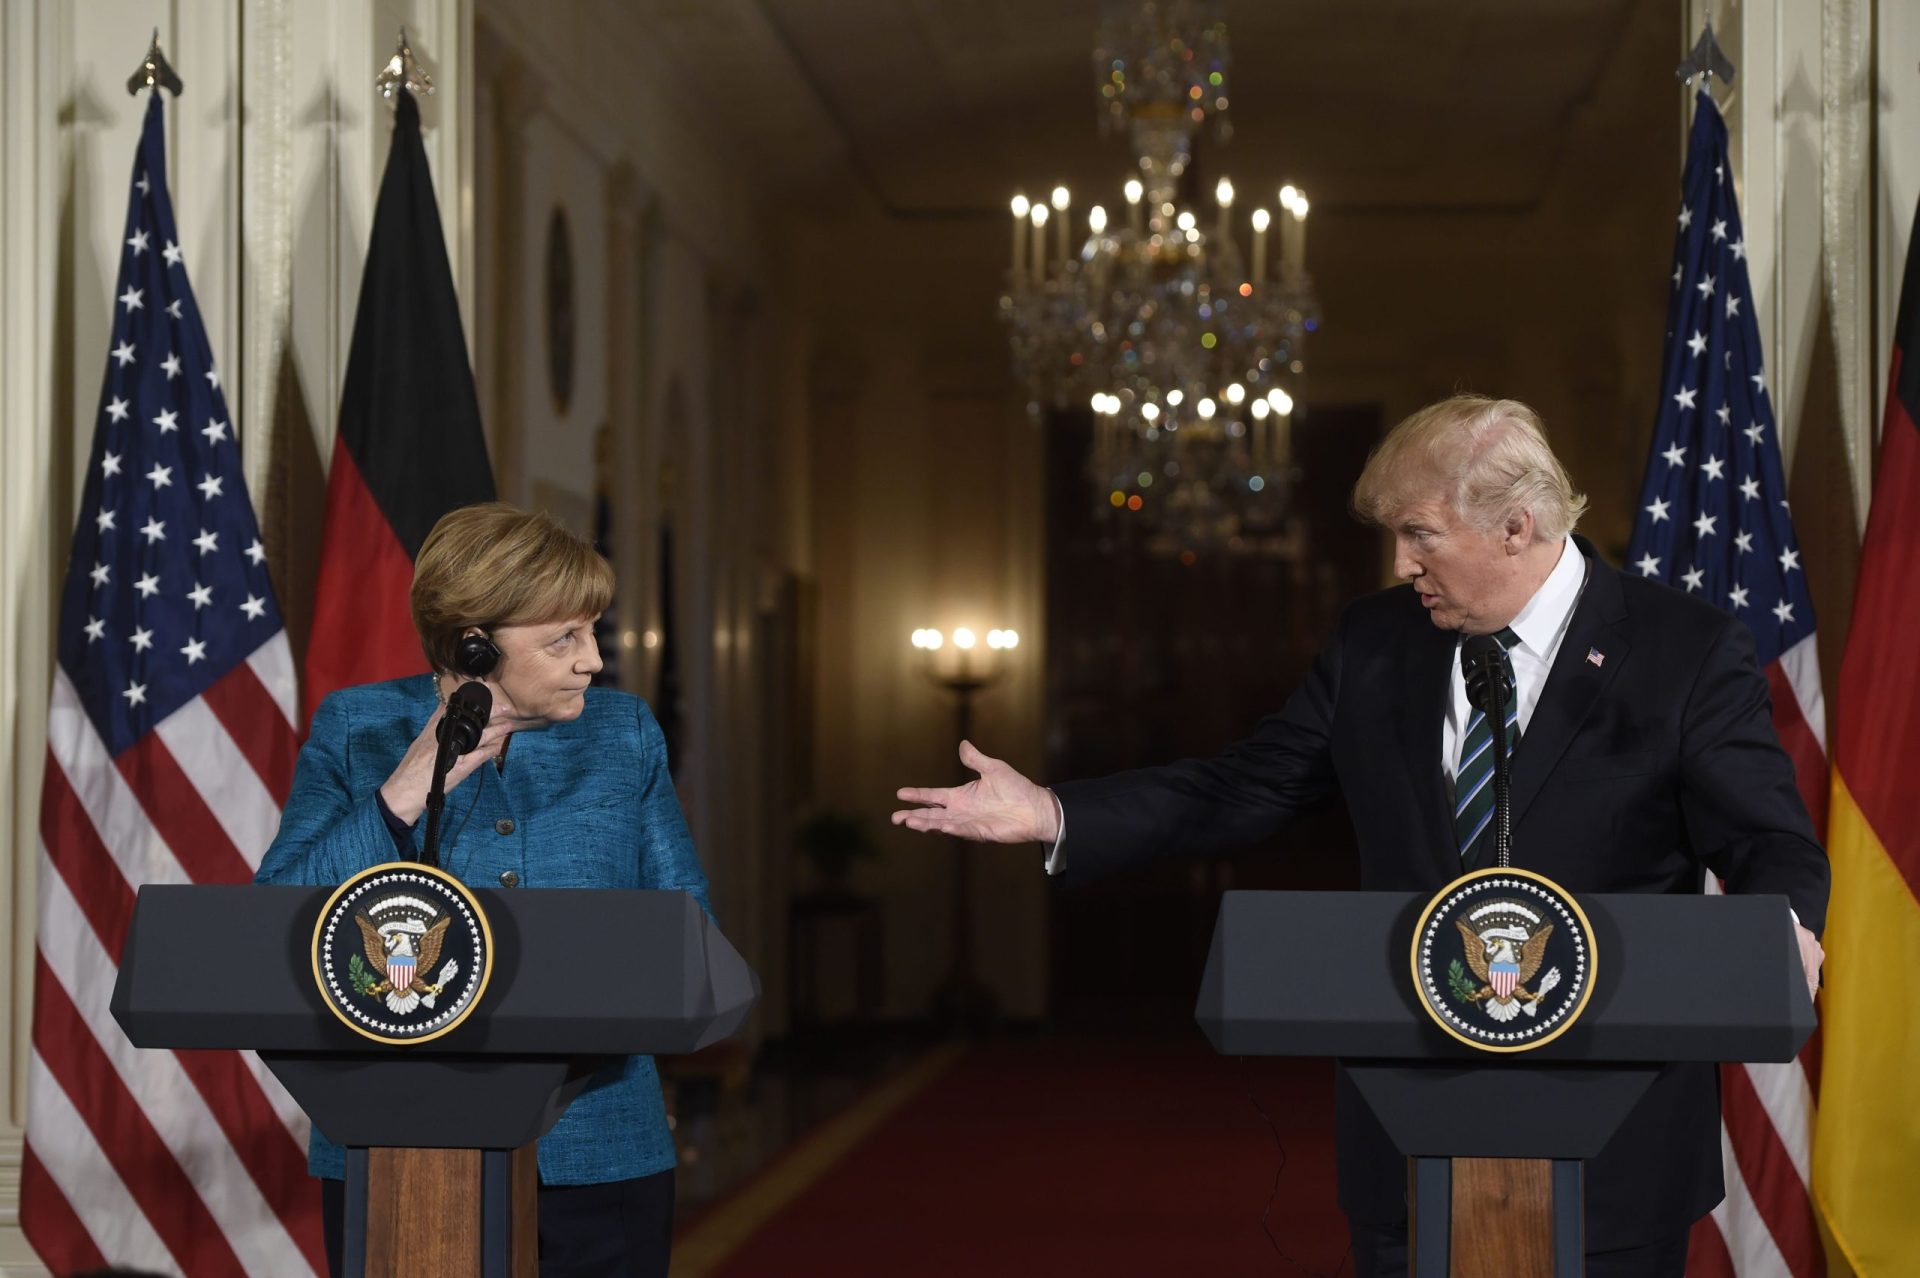 O que têm Trump e Merkel em comum? Foram ambos espiados por Obama, diz o presidente americano